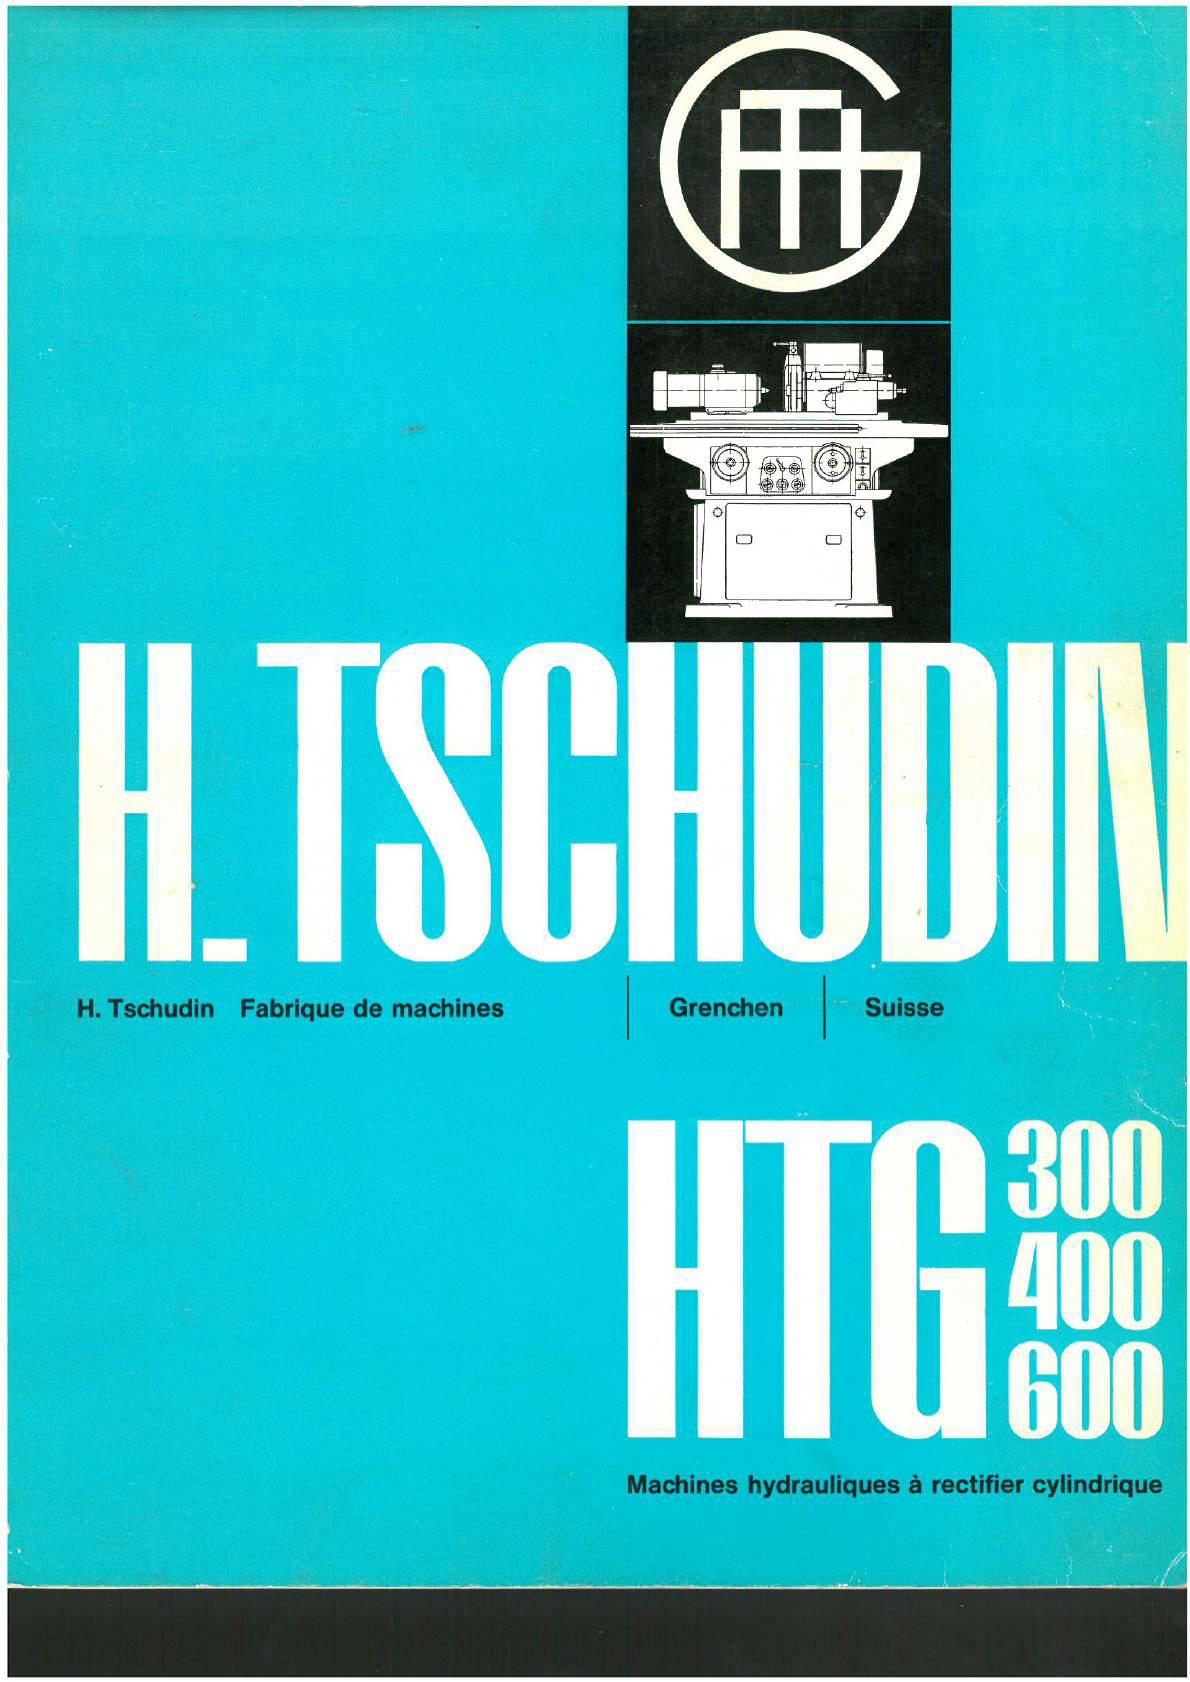 Tschudin HTG 300 400 600 Uw164